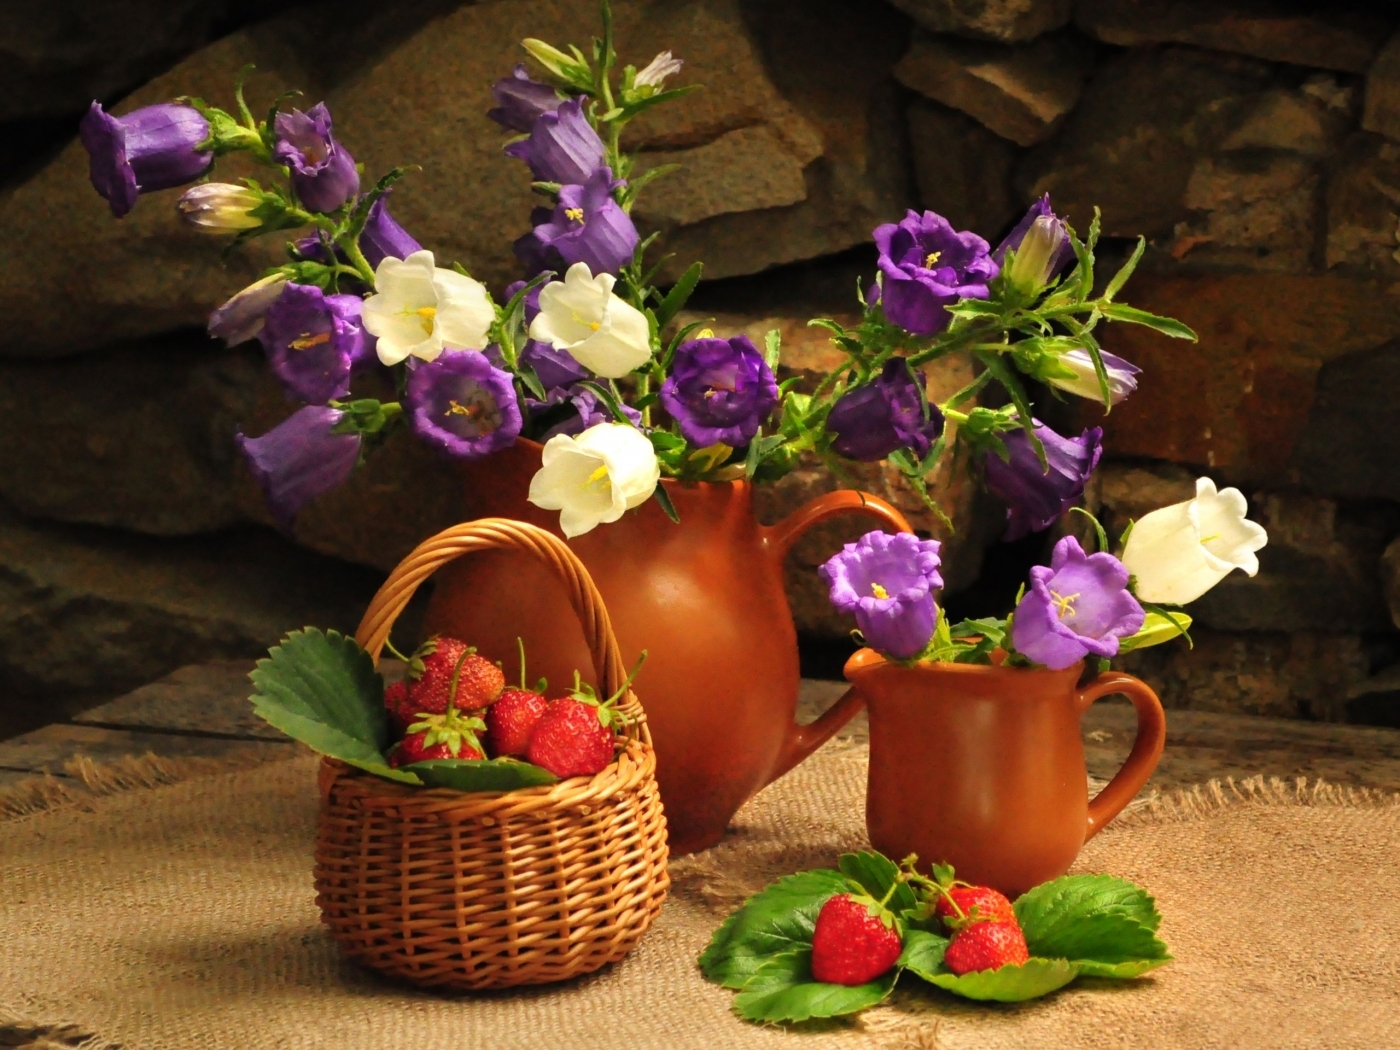 Скачать обои бесплатно Цветы, Растения, Объекты картинка на рабочий стол ПК